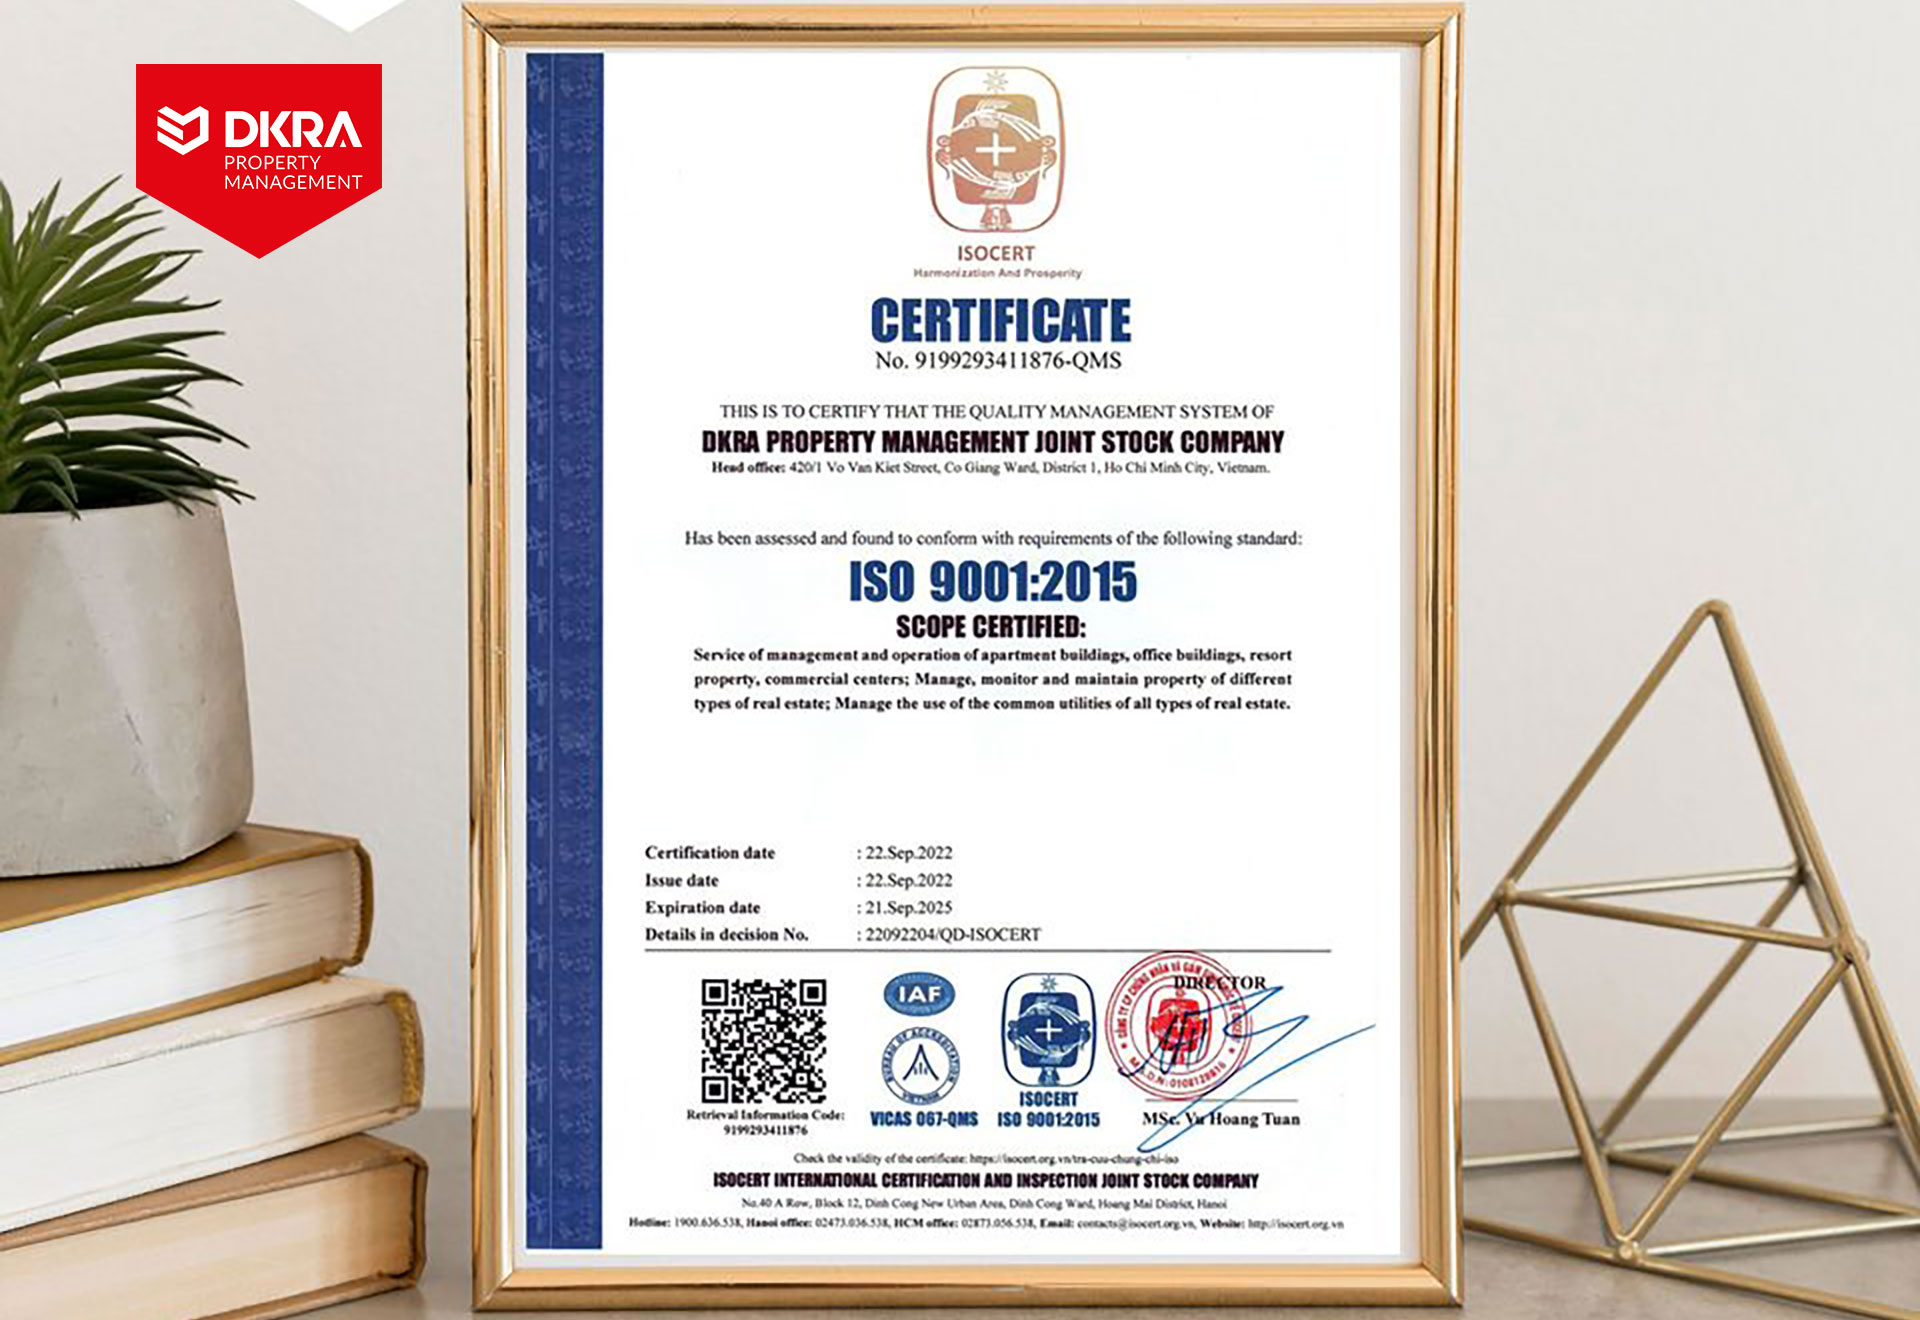 DKRA Living áp dụng hệ thống quản lý chất lượng theo tiêu chuẩn ISO 9001:2015